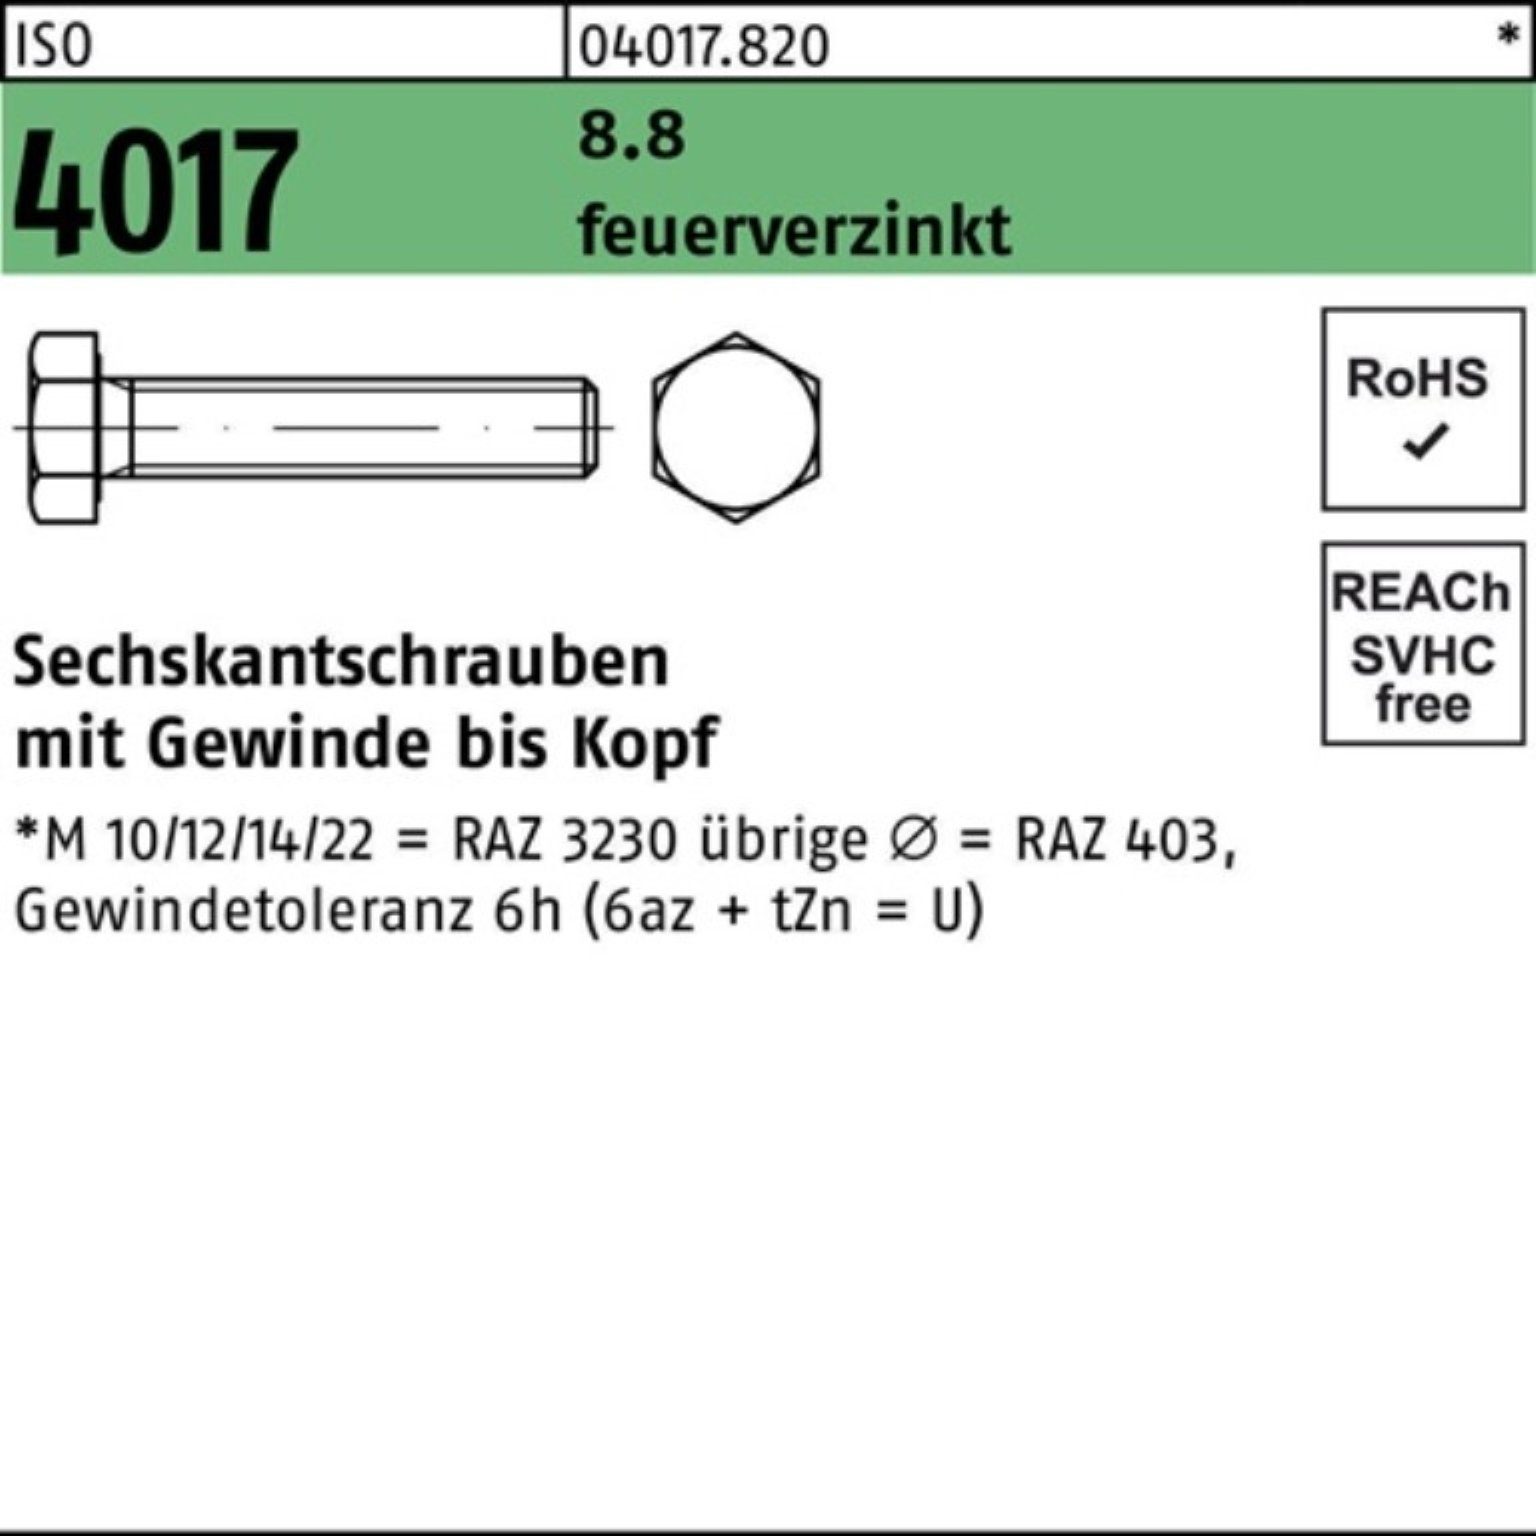 Bufab Sechskantschraube 100er Pack Sechskantschraube VG 4017 80 25 ISO M20x feuerverz. St 8.8